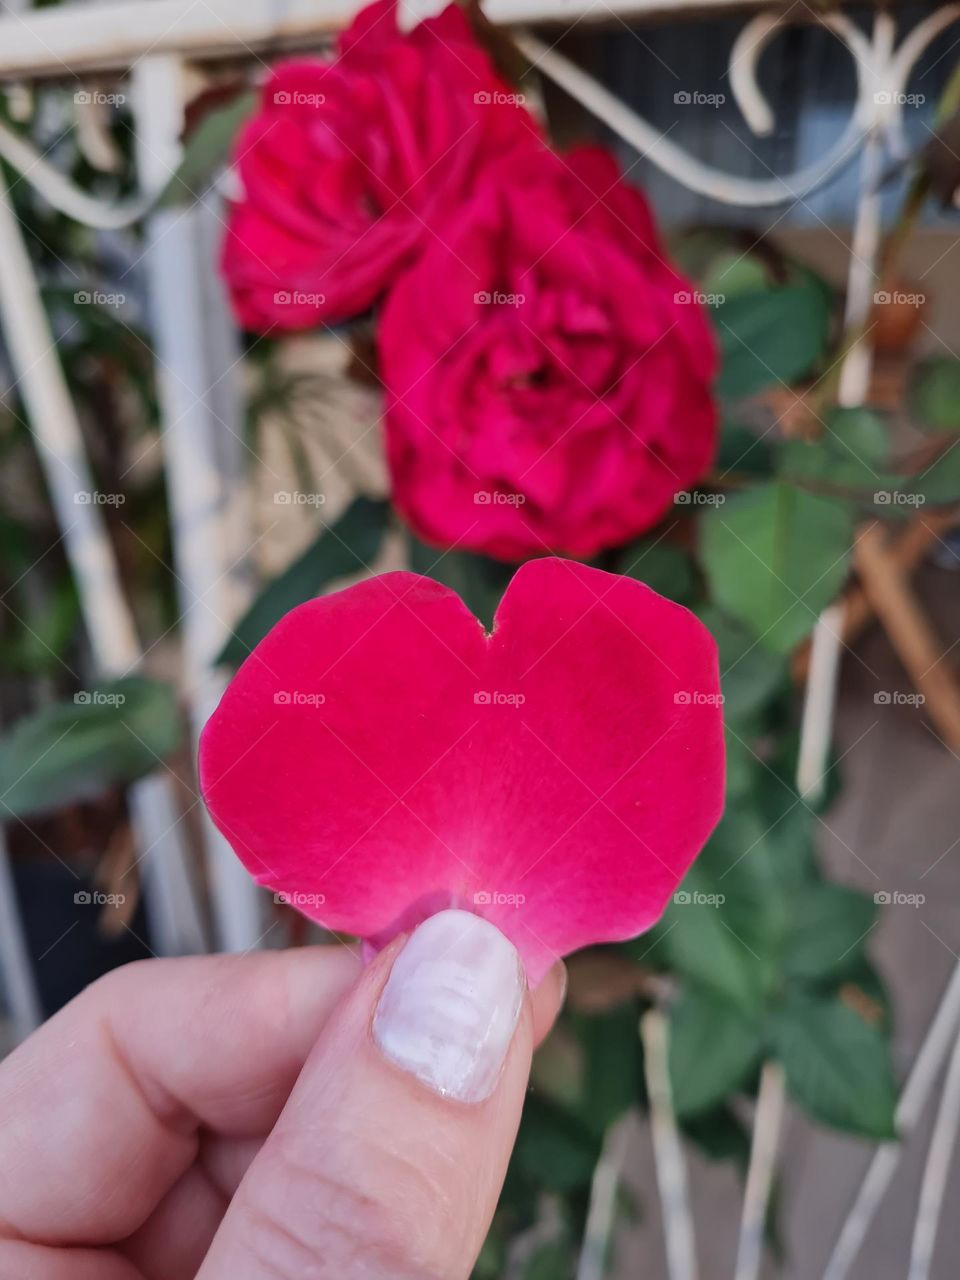 Heart flower